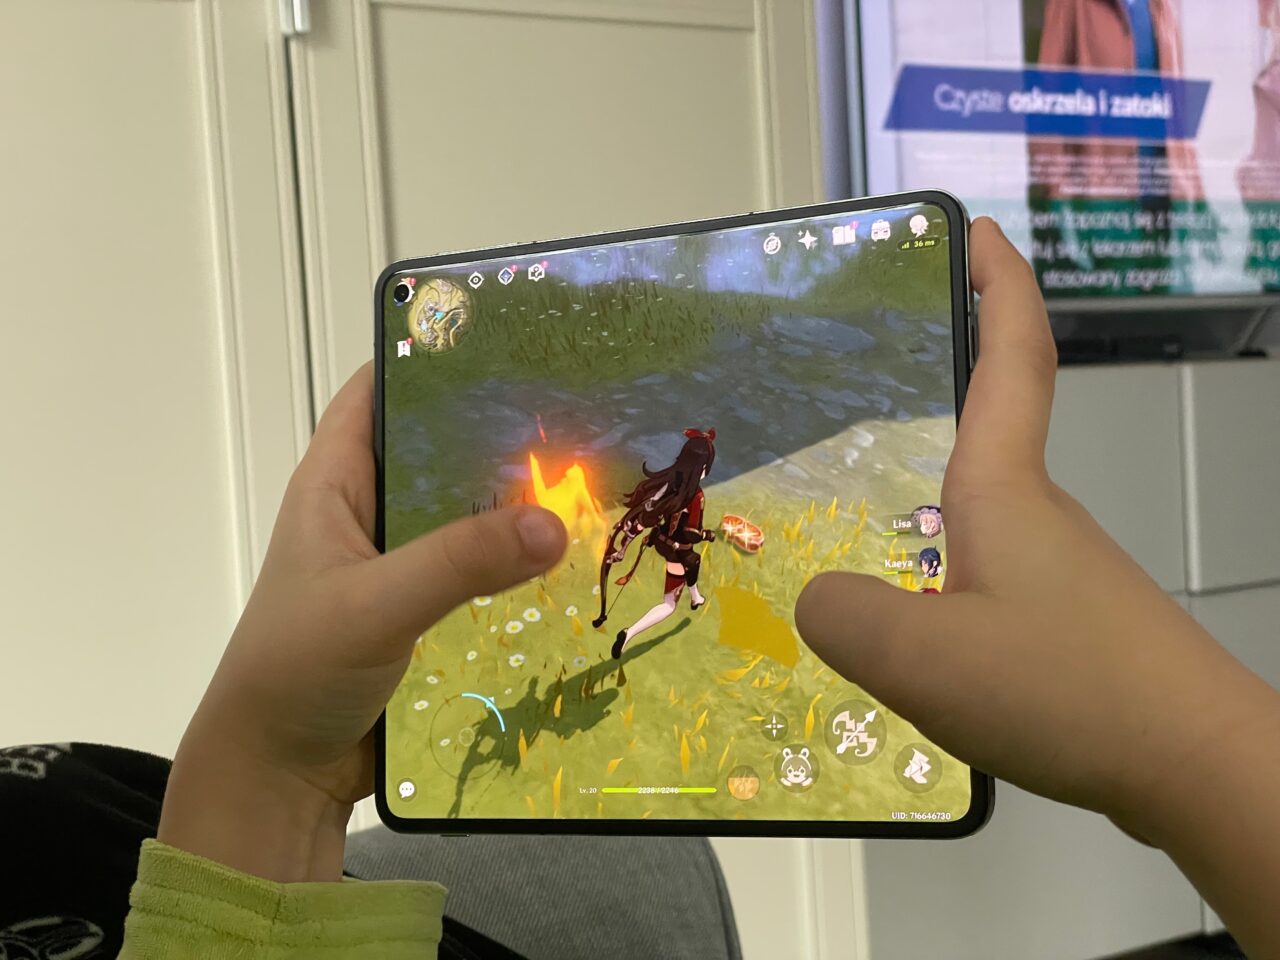 Osoba trzymająca tablet, na którym wyświetlana jest gra z postacią biegnącą przez trawiaste pole z widocznym ogniem w grze mobilnej, w tle nieostry ekran telewizora. recenzja oneplus open, genshin impact